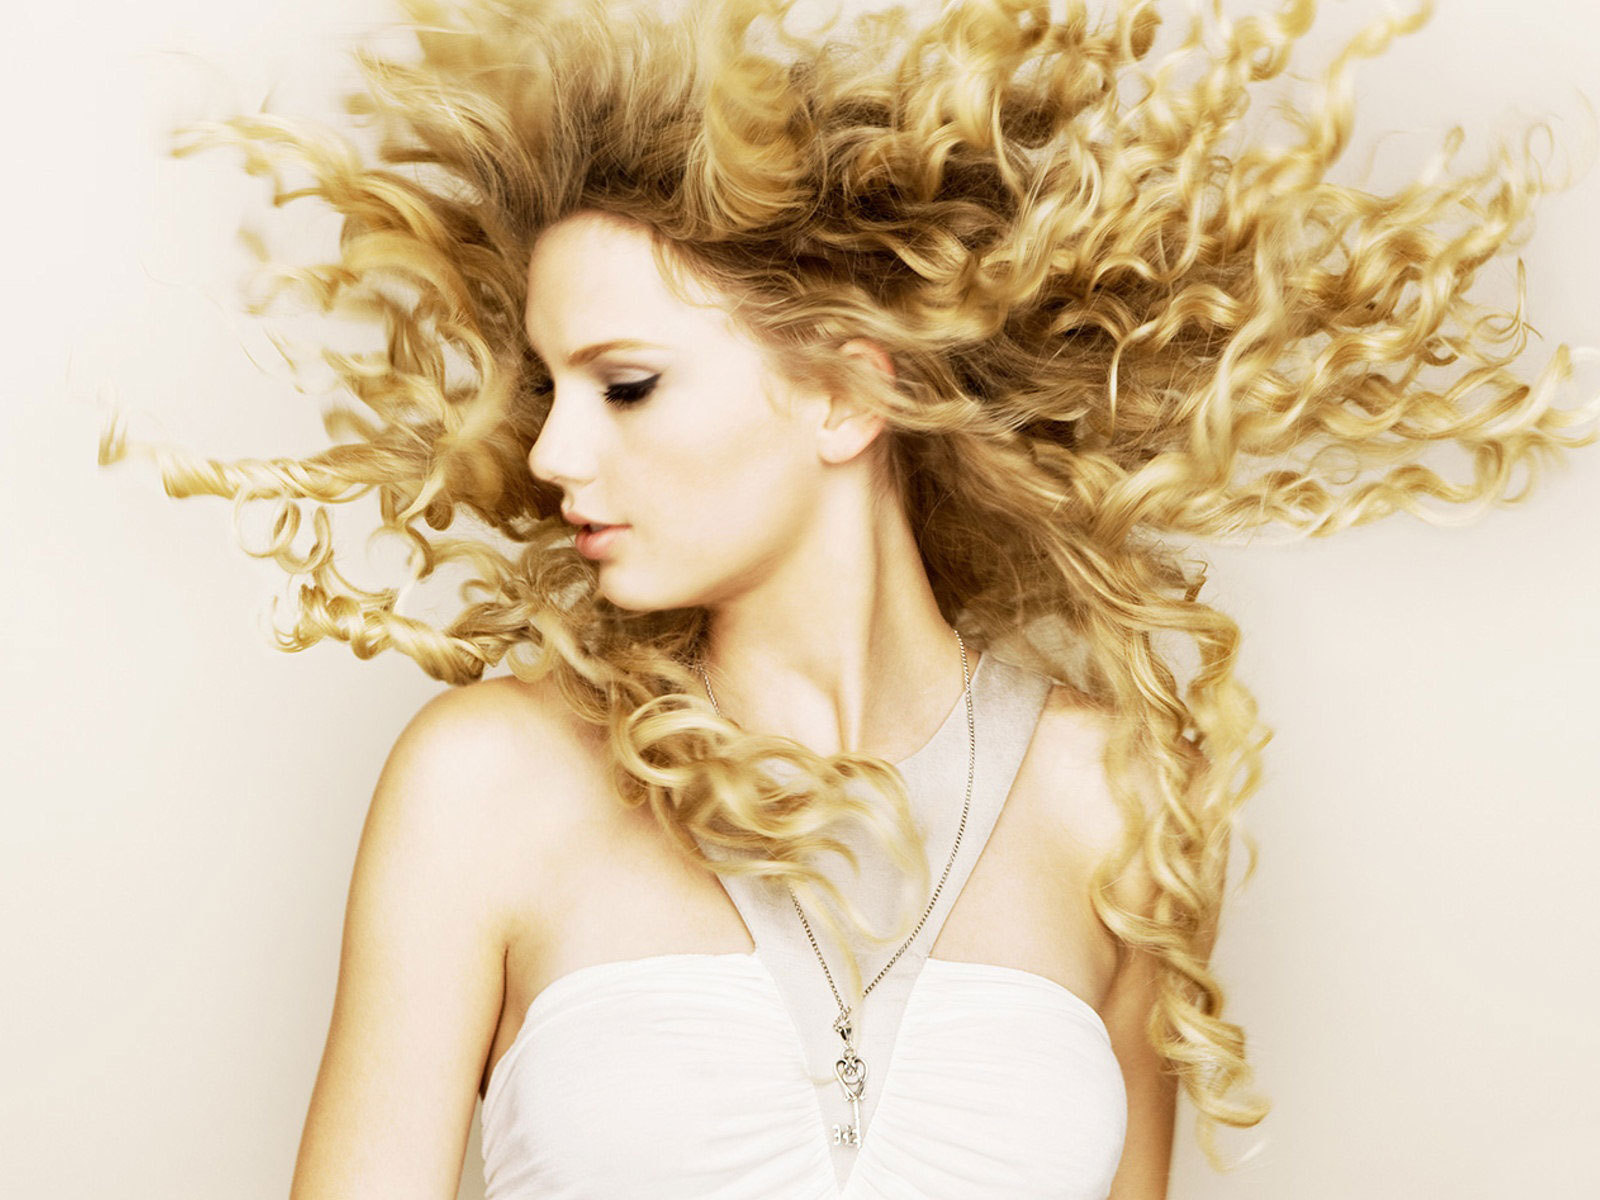 Fearless - Fearless Taylor Swift album Wallpaper 17904596 - Fanpop